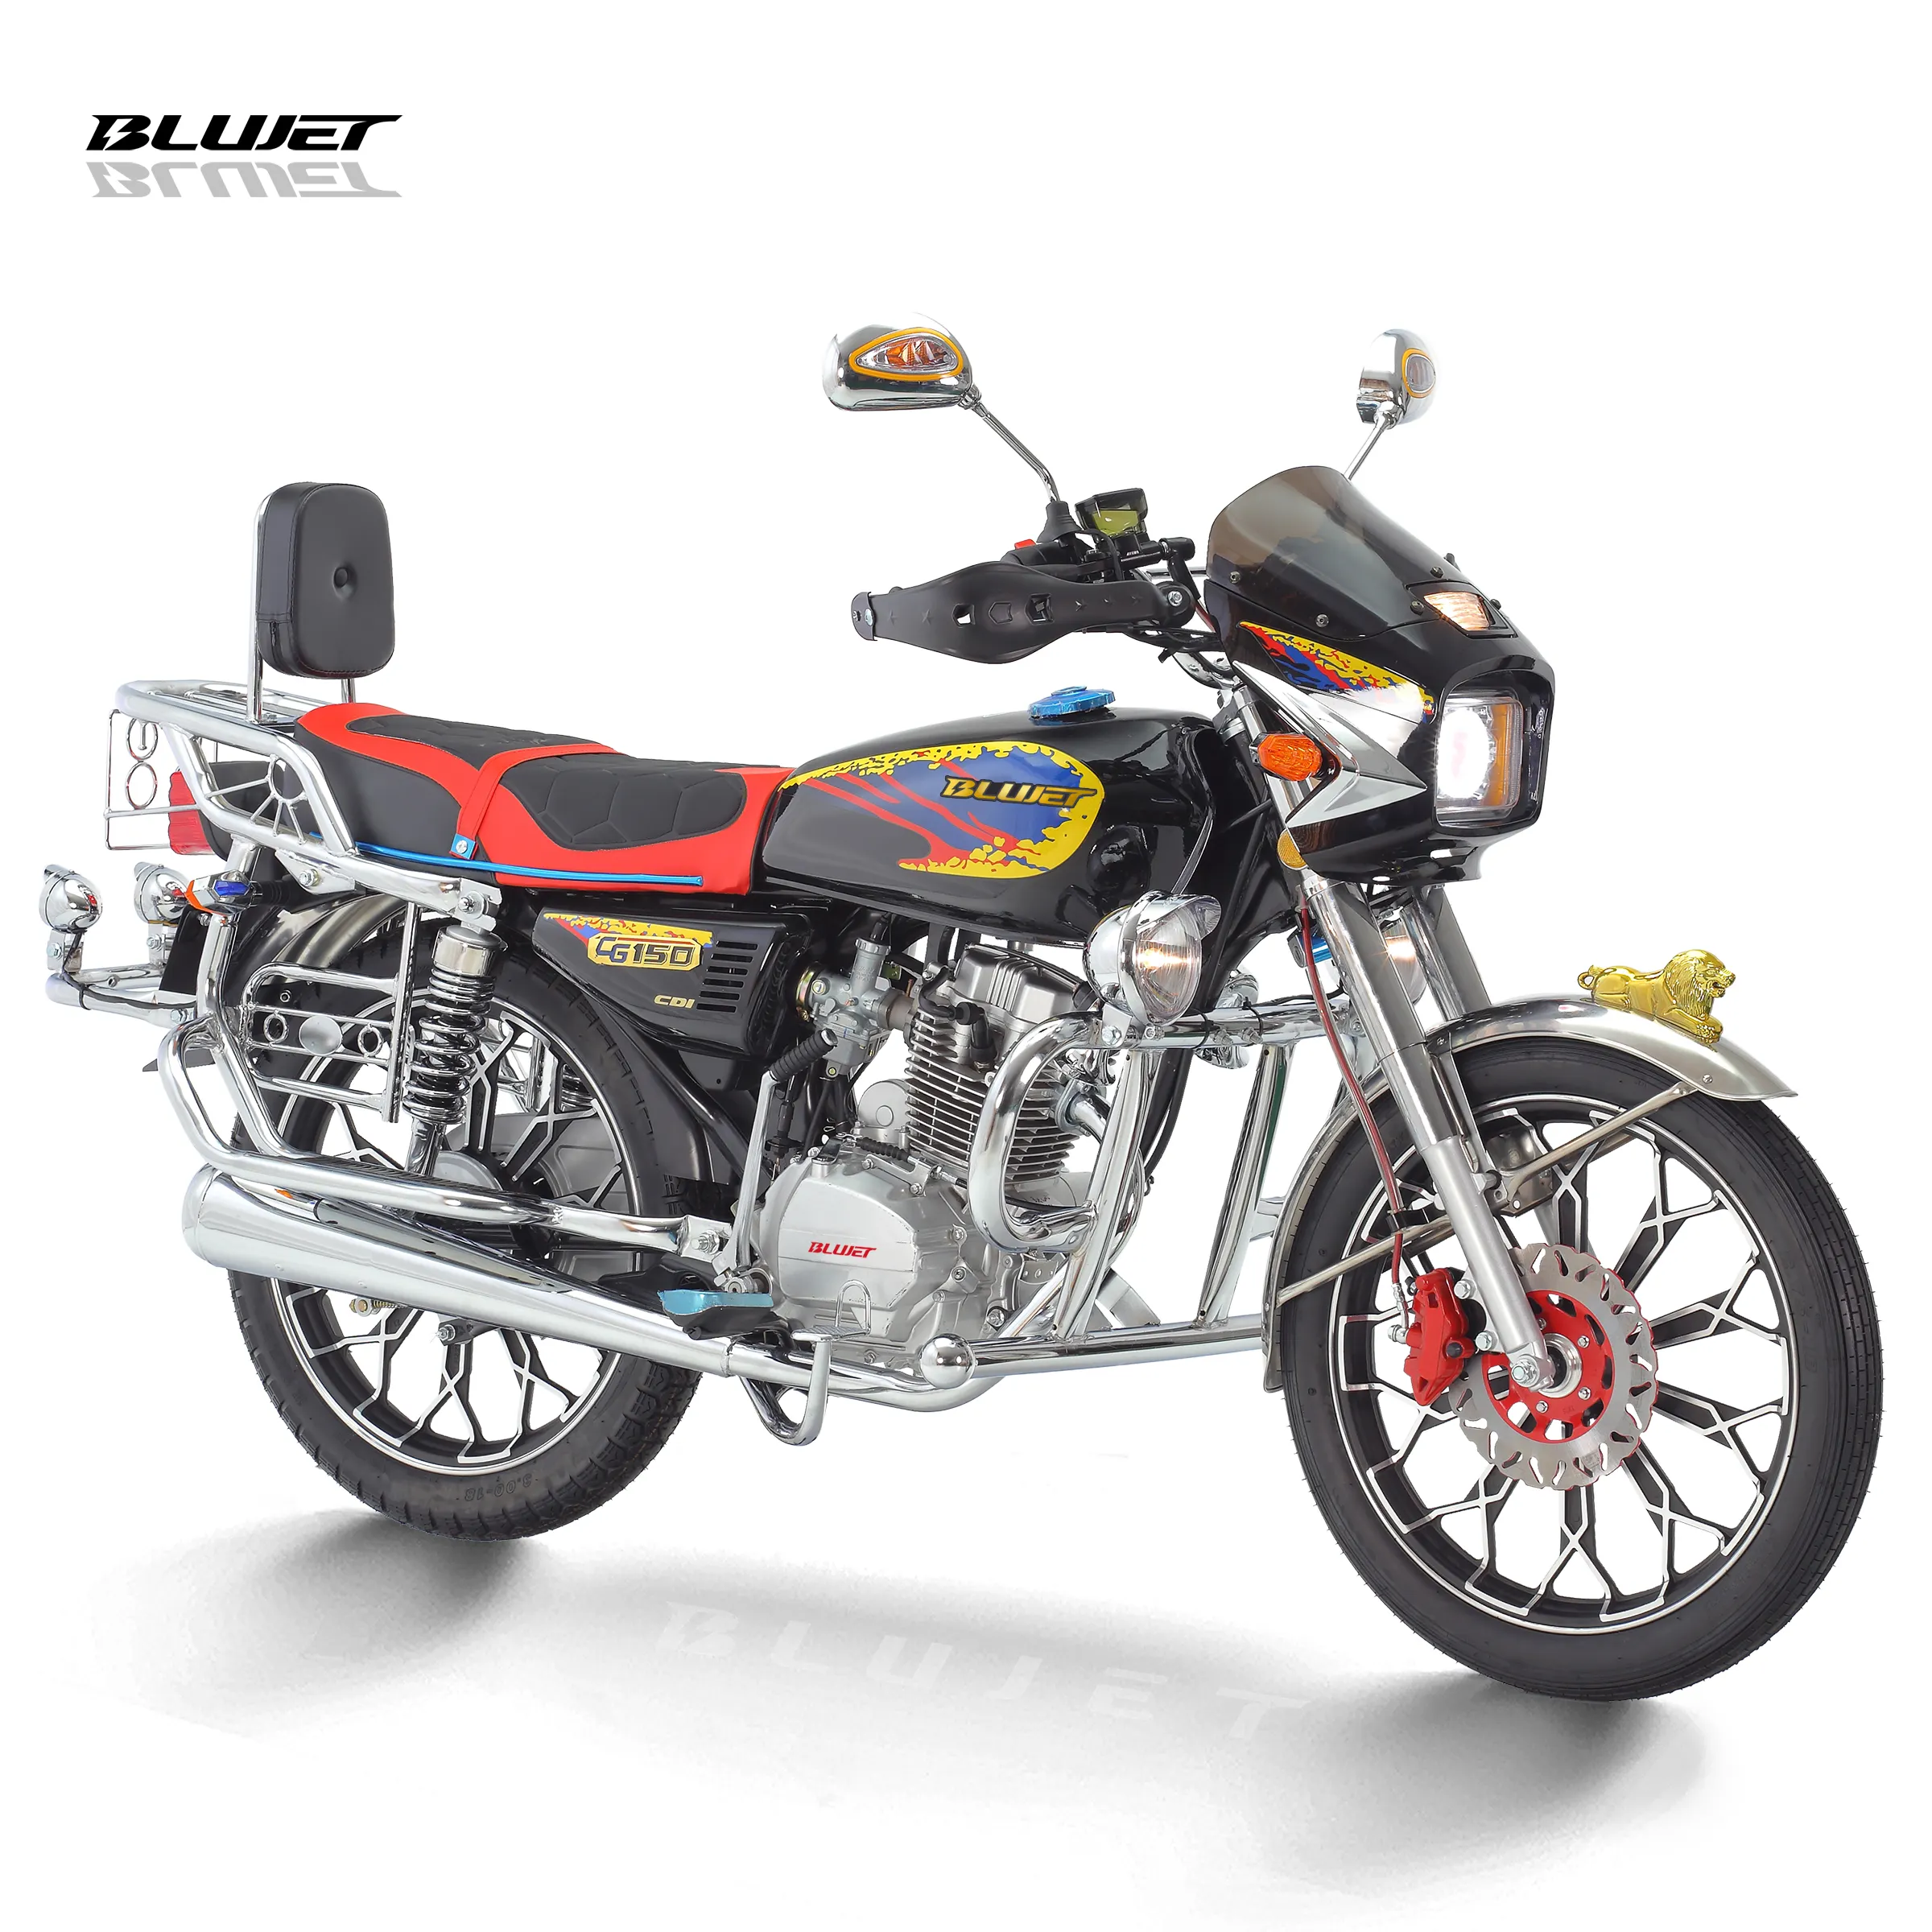 SBR150 blackcat Nueva 150cc motocicleta de calle varilla de empuje CG150 motor medidor digital freno de disco para el mercado de América Latina